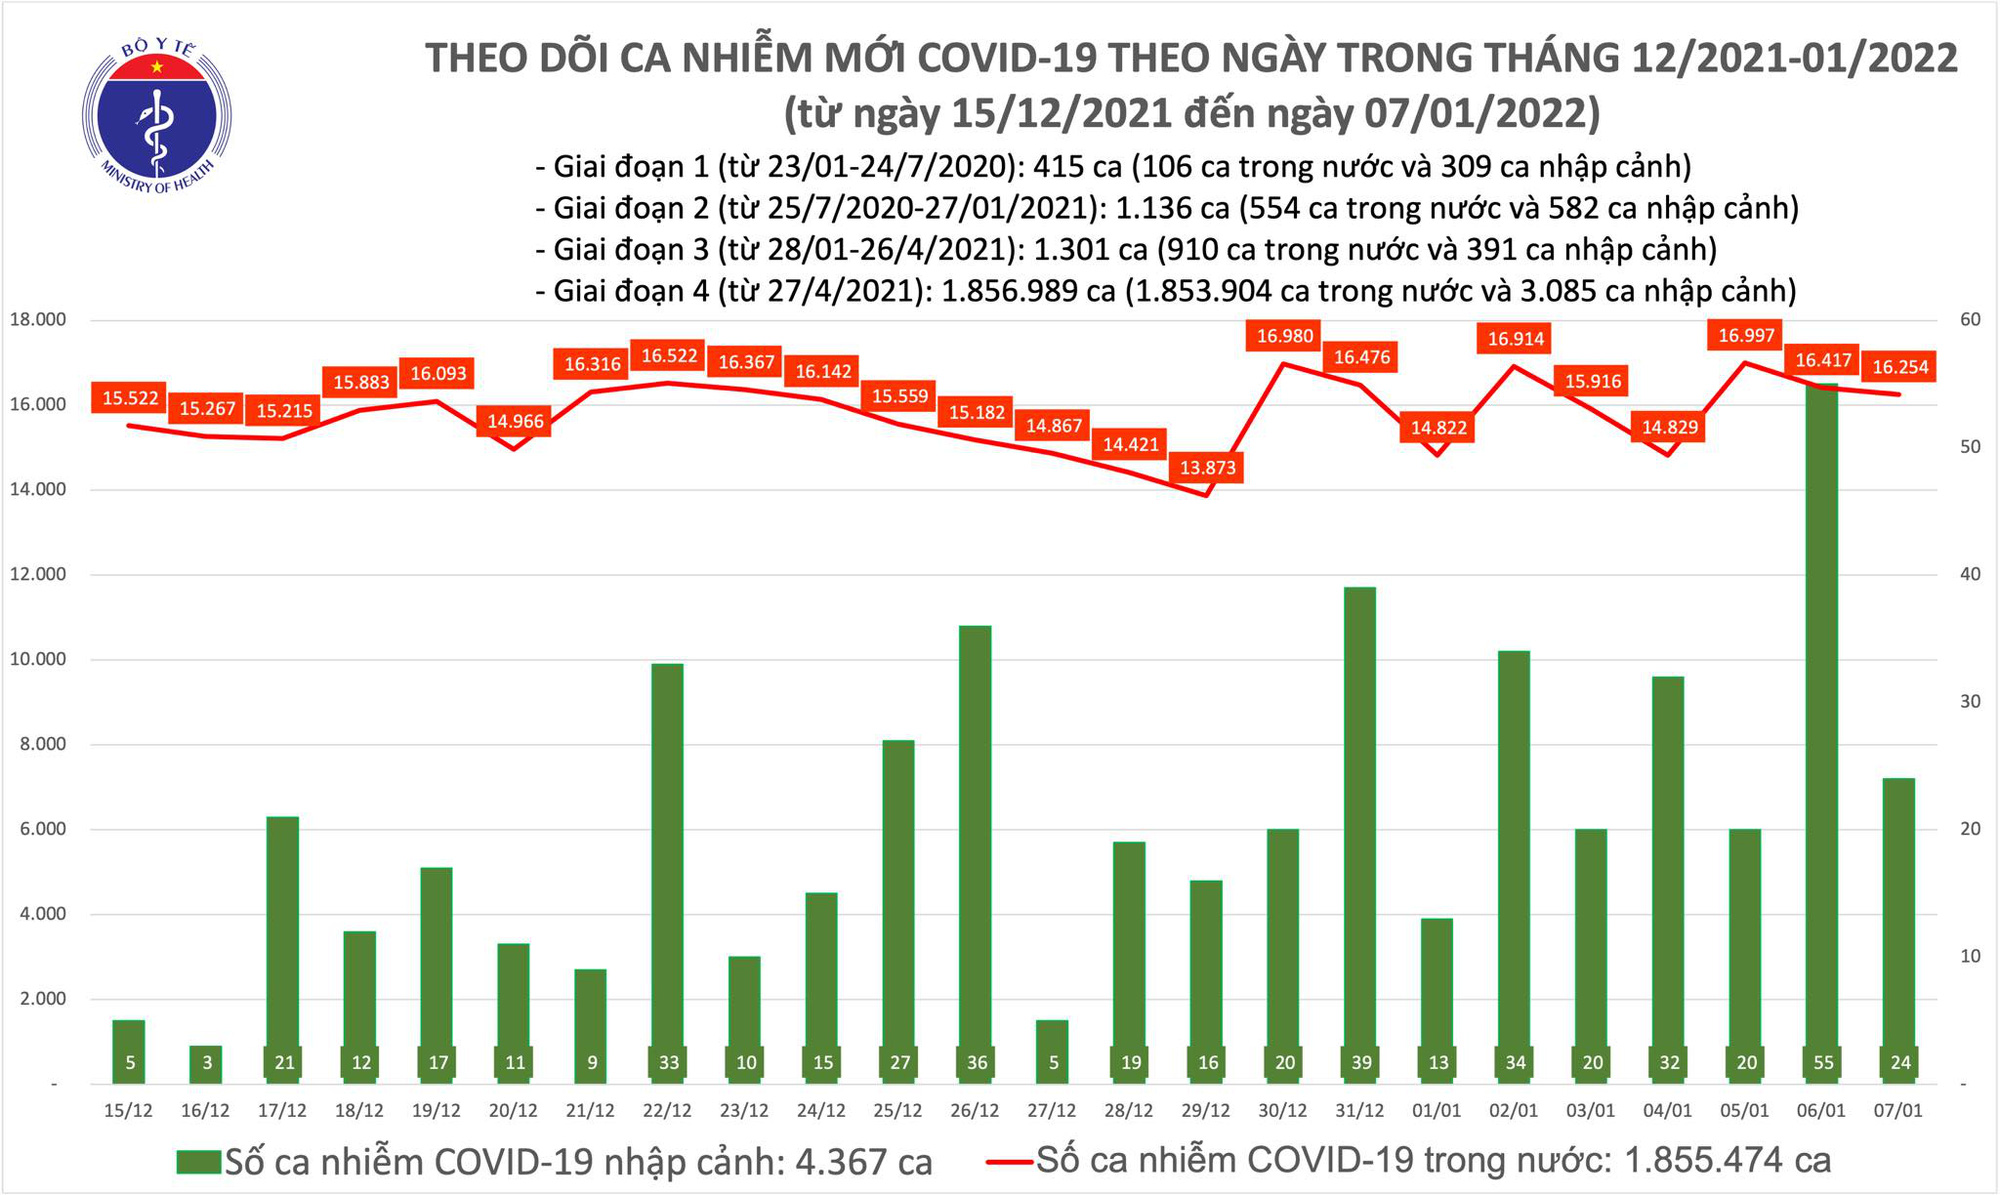 Ngày 7/1: Có 16.278 ca mắc COVID-19 tại 59 tỉnh, thành; Hà Nội tiếp tục nhiều nhất với 2.723 ca